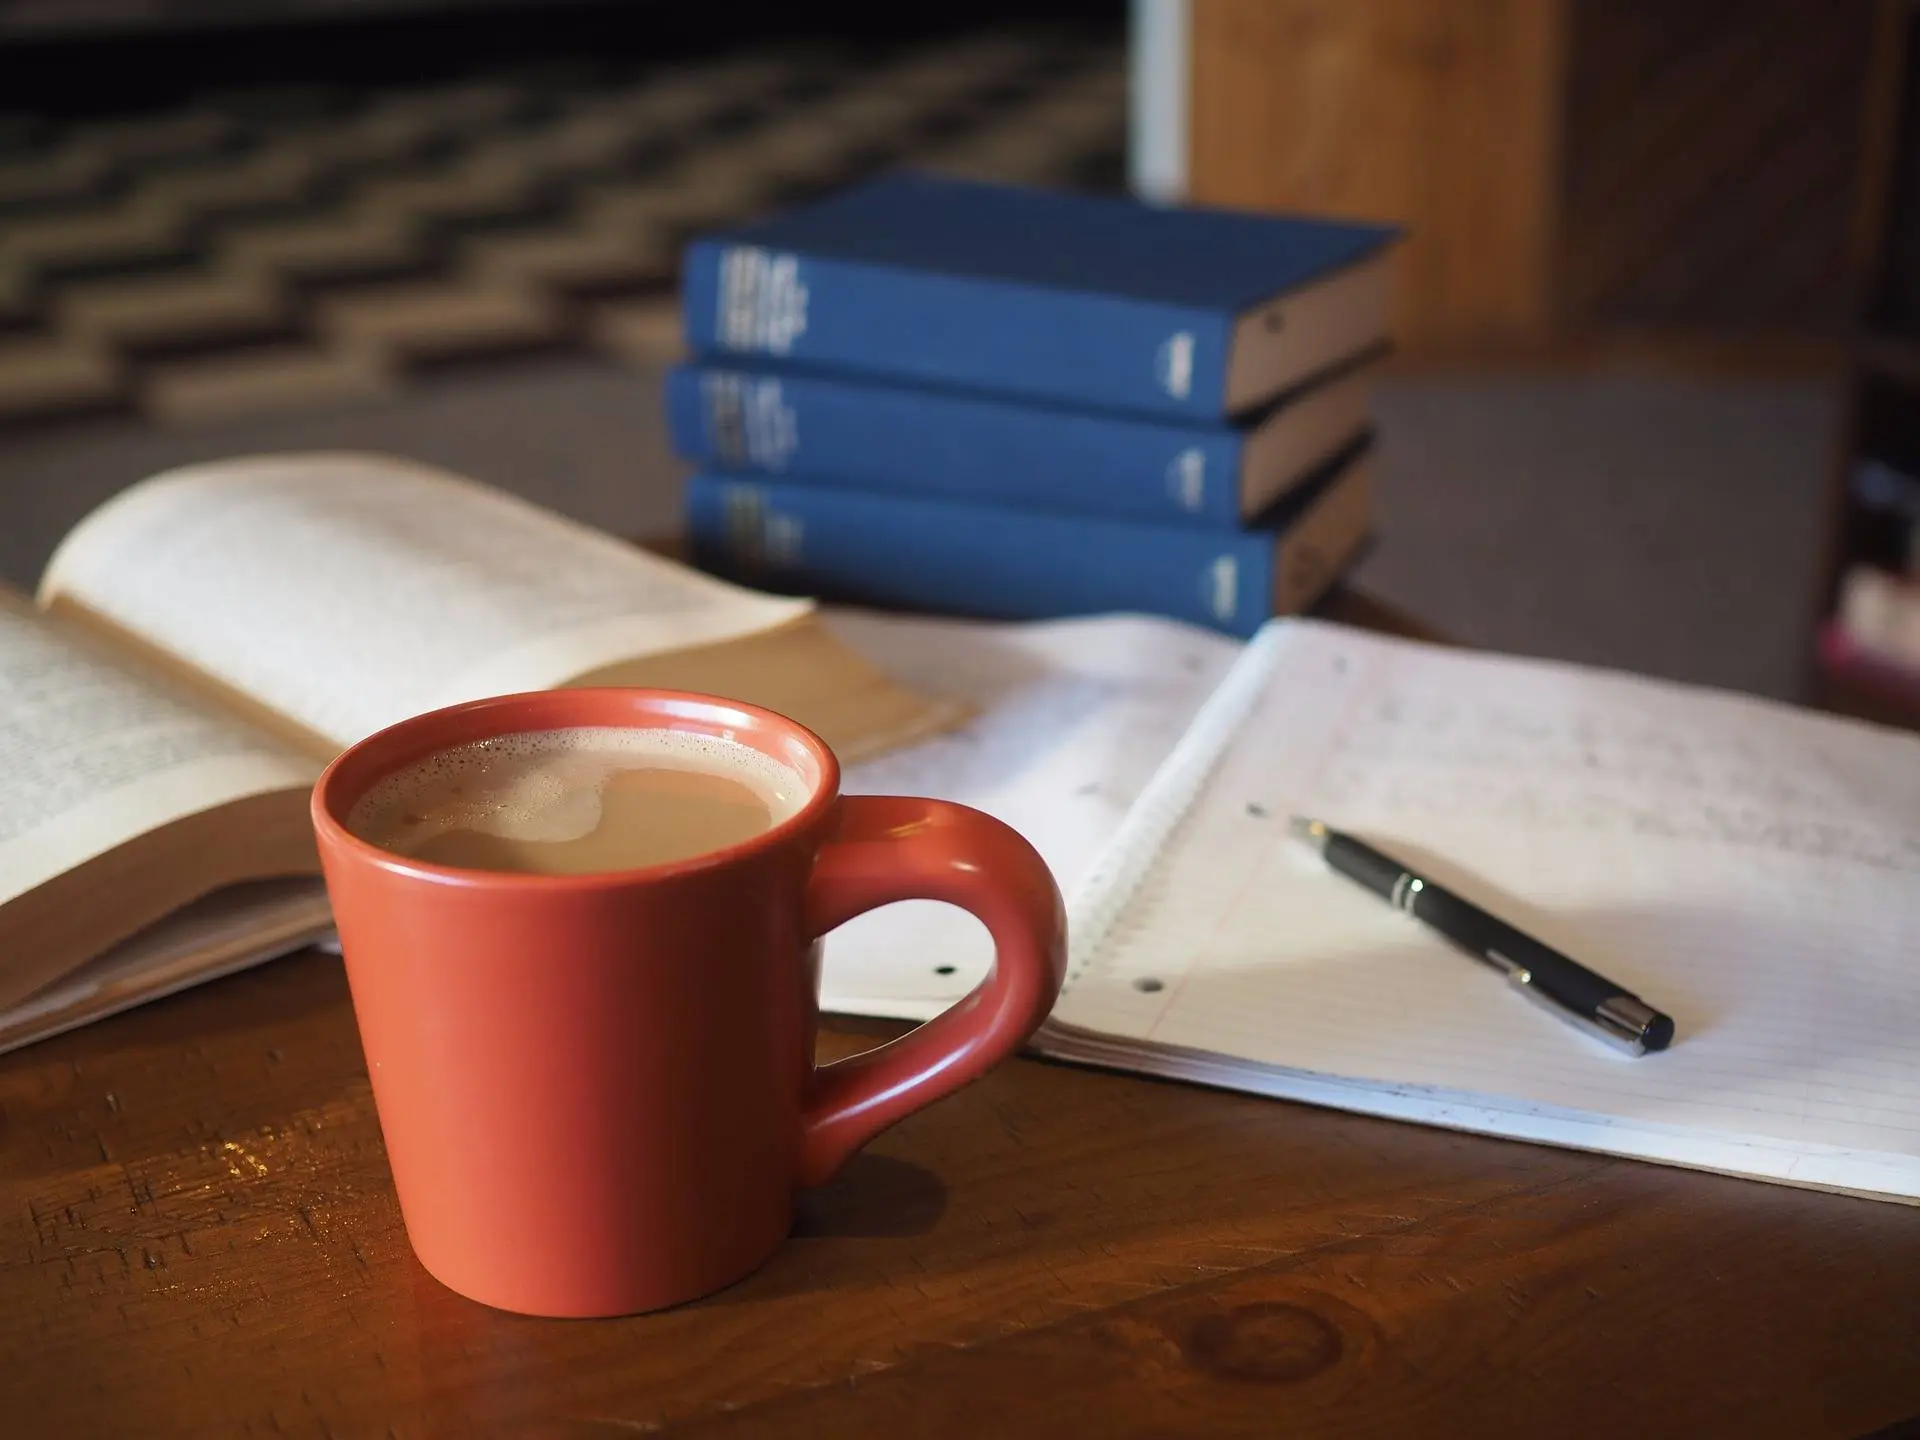 cafe para estudiar - Qué café es bueno para estudiar